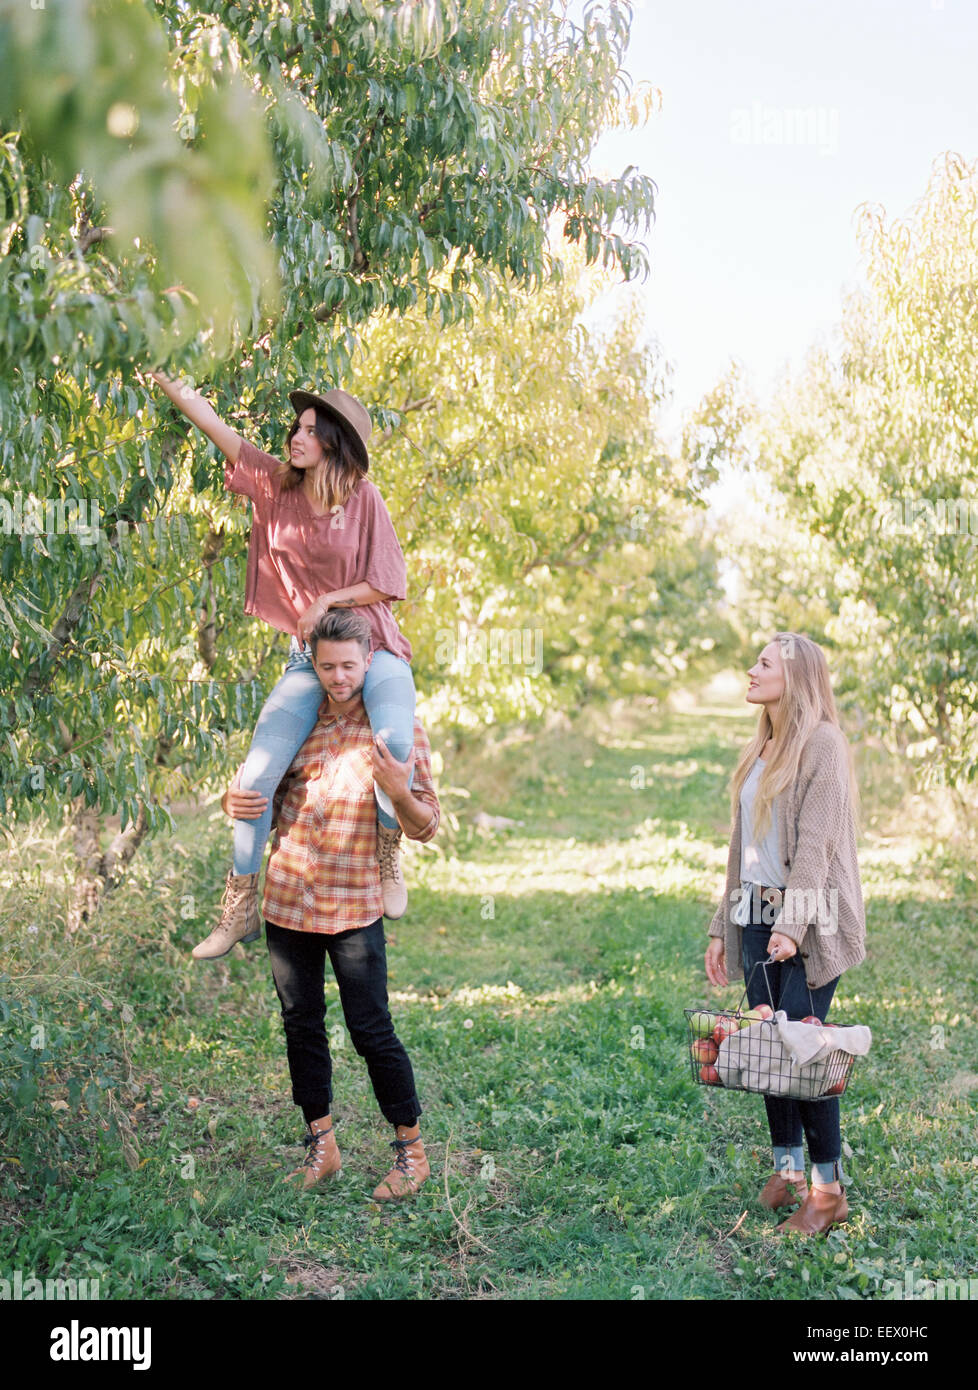 Orchard. Tres personas recogiendo manzanas de un árbol. Foto de stock